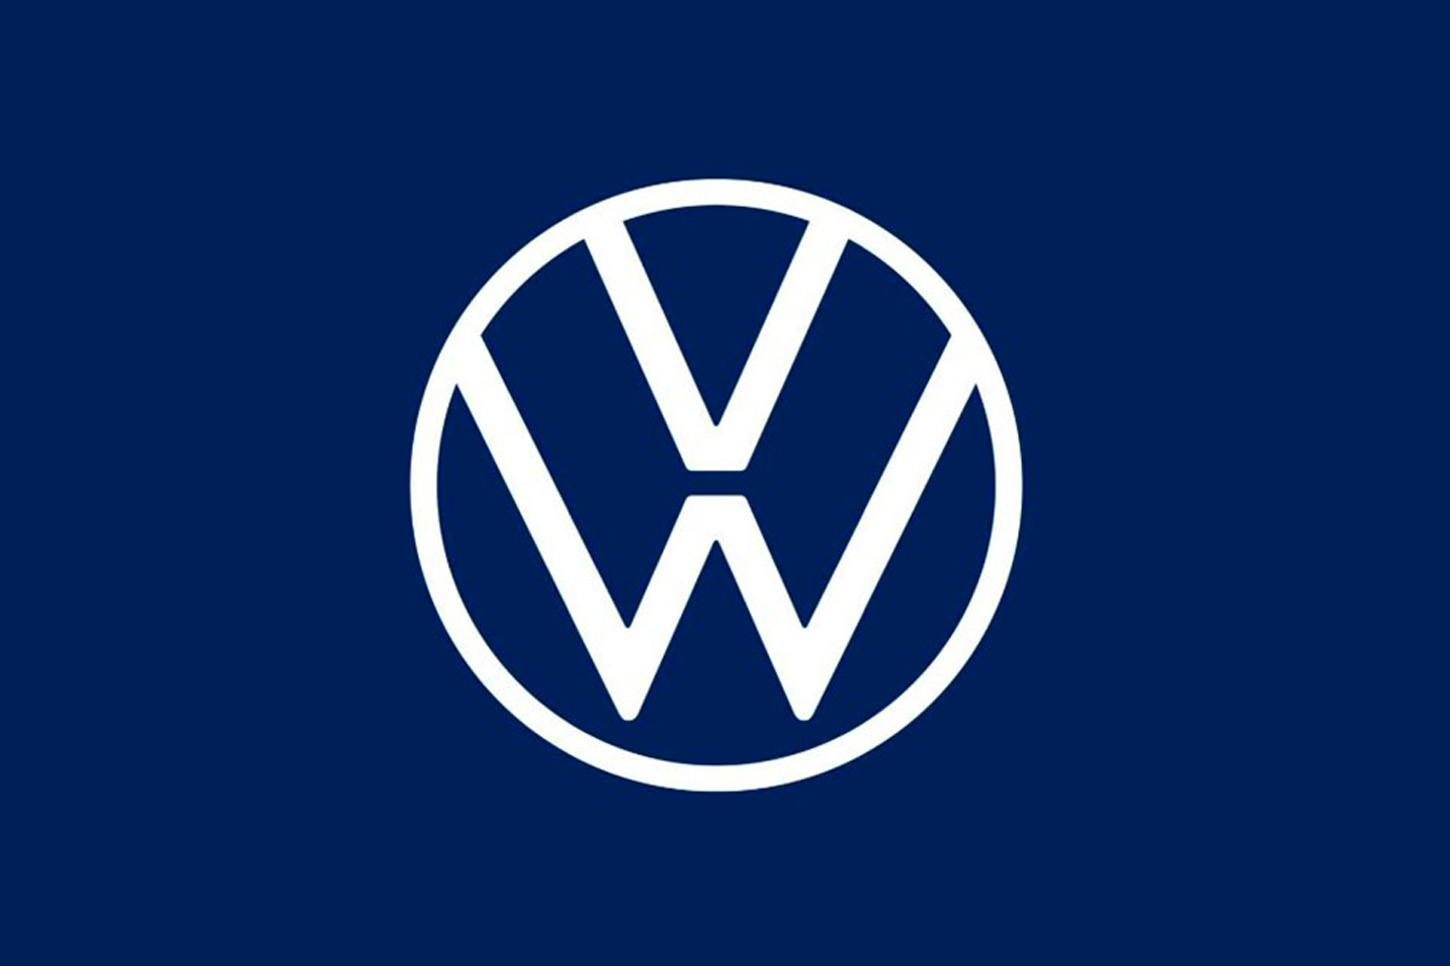 Polémica por el cambio del logotipo de Volkswagen. ¿Tú qué opinas?